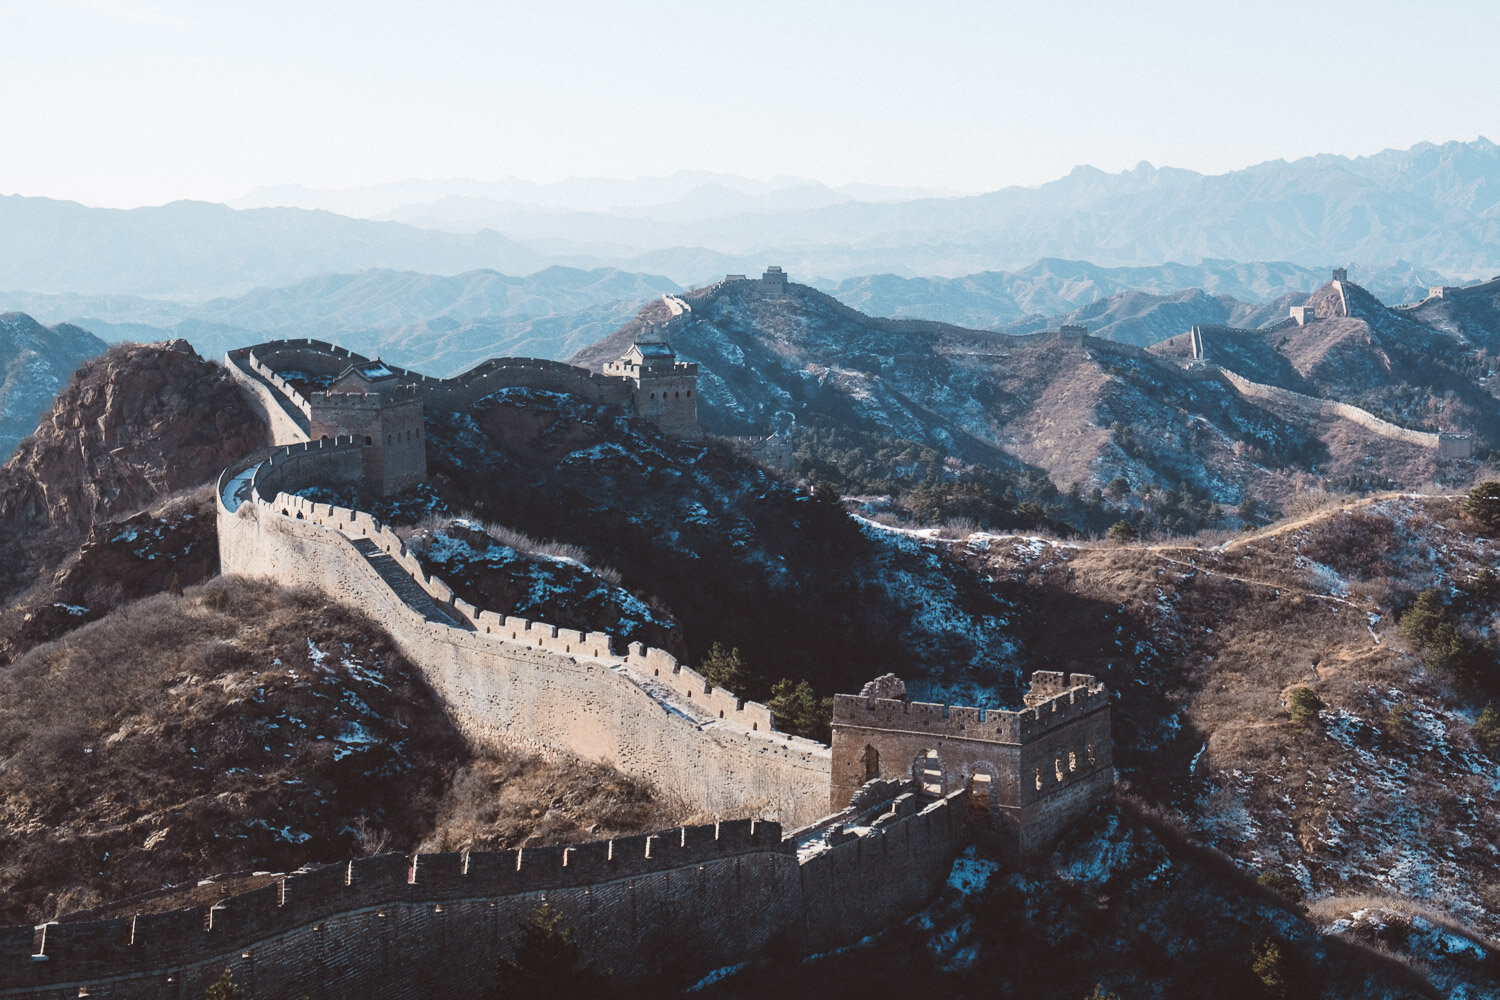 Great Wall, China 2016